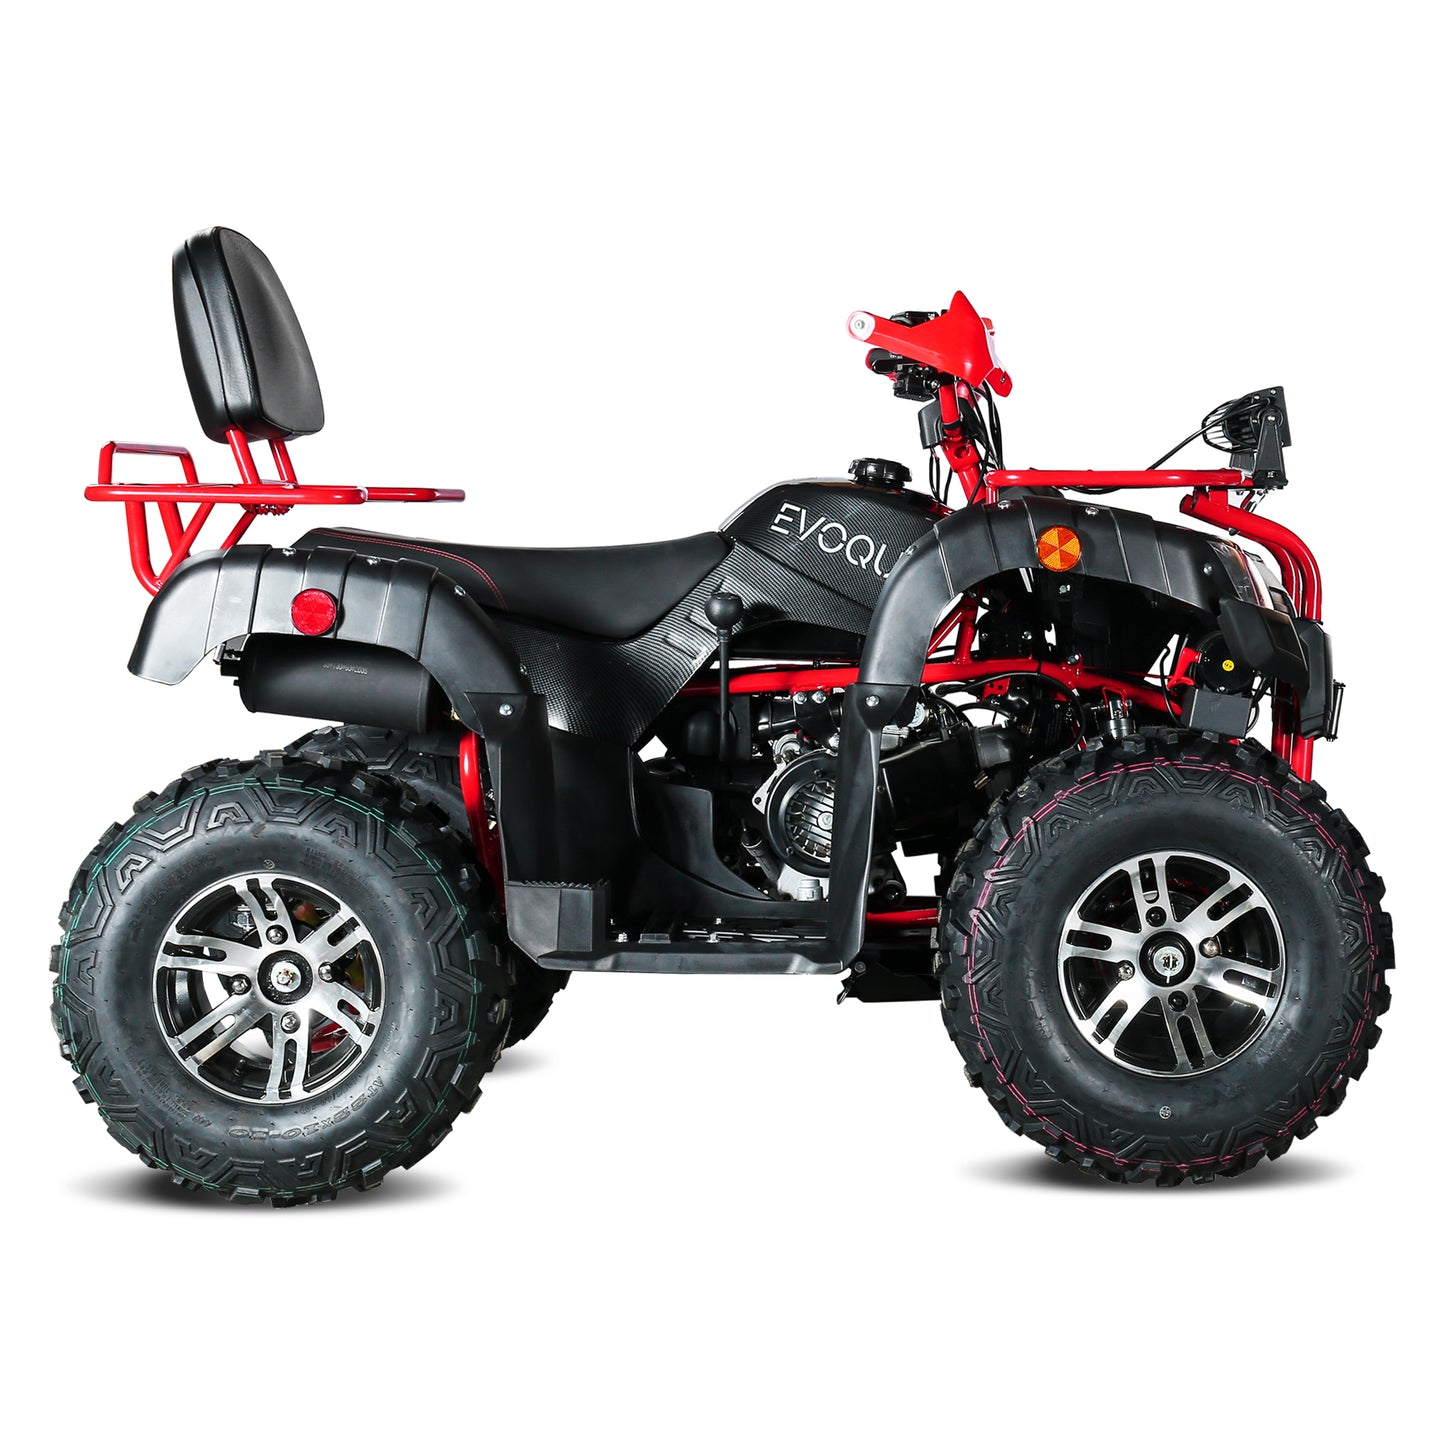 VQS-150XR ATV